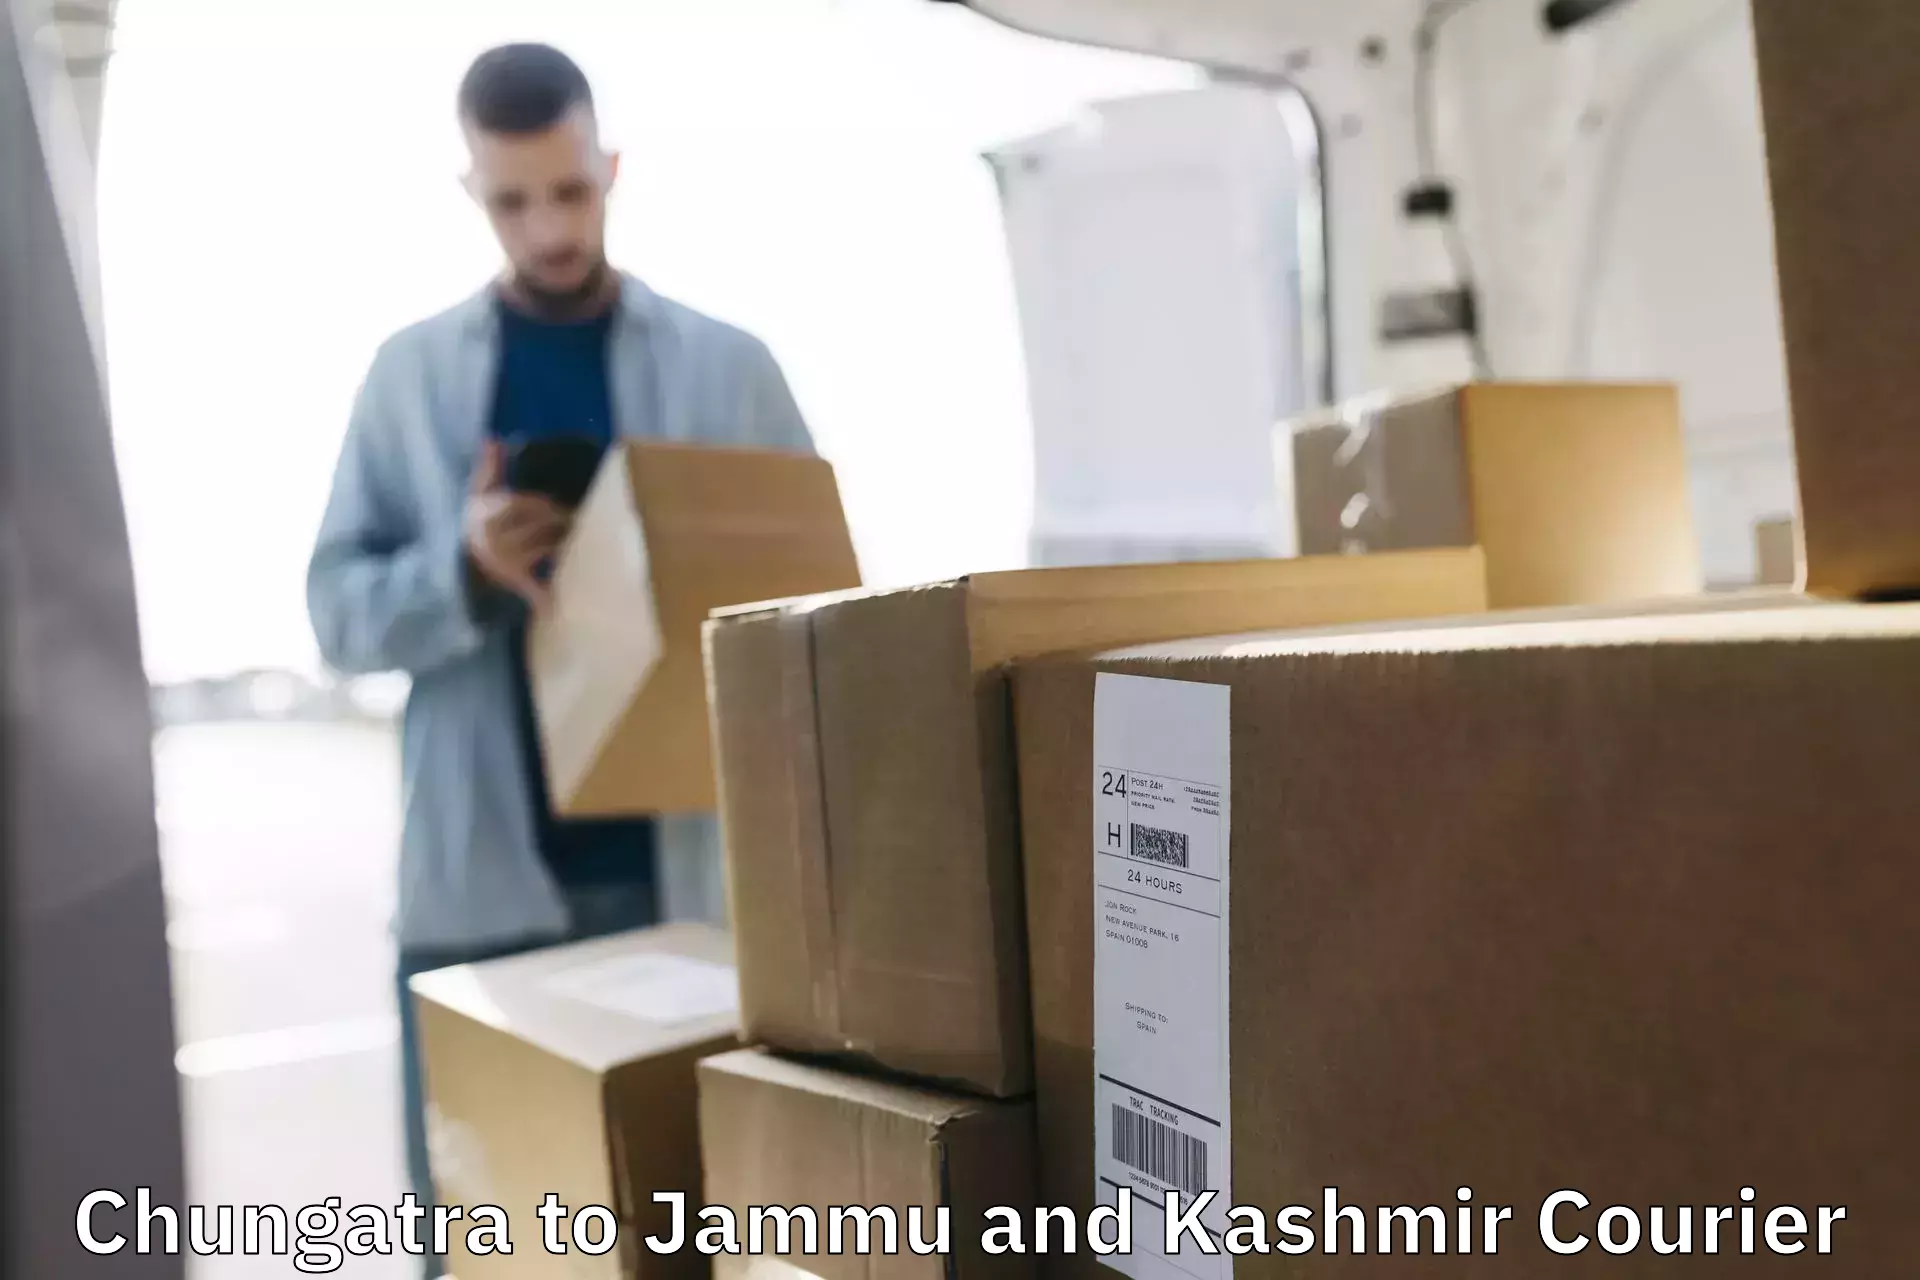 High-performance logistics Chungatra to Jammu and Kashmir